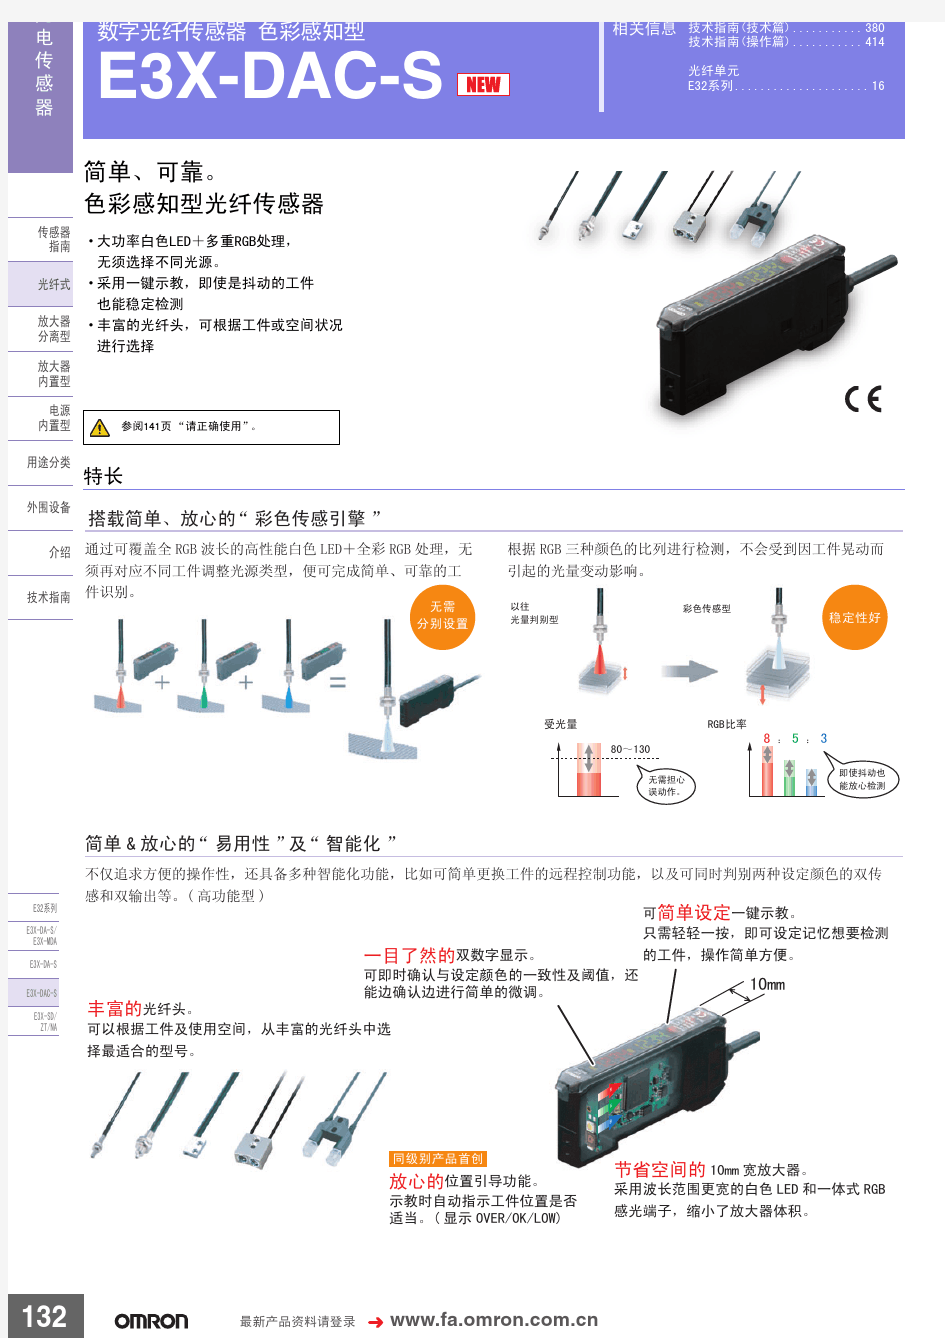 Omron欧姆龙选型样本手册说明书相关信息之数字光纤传感器 色彩感知型E3X-DAC-S